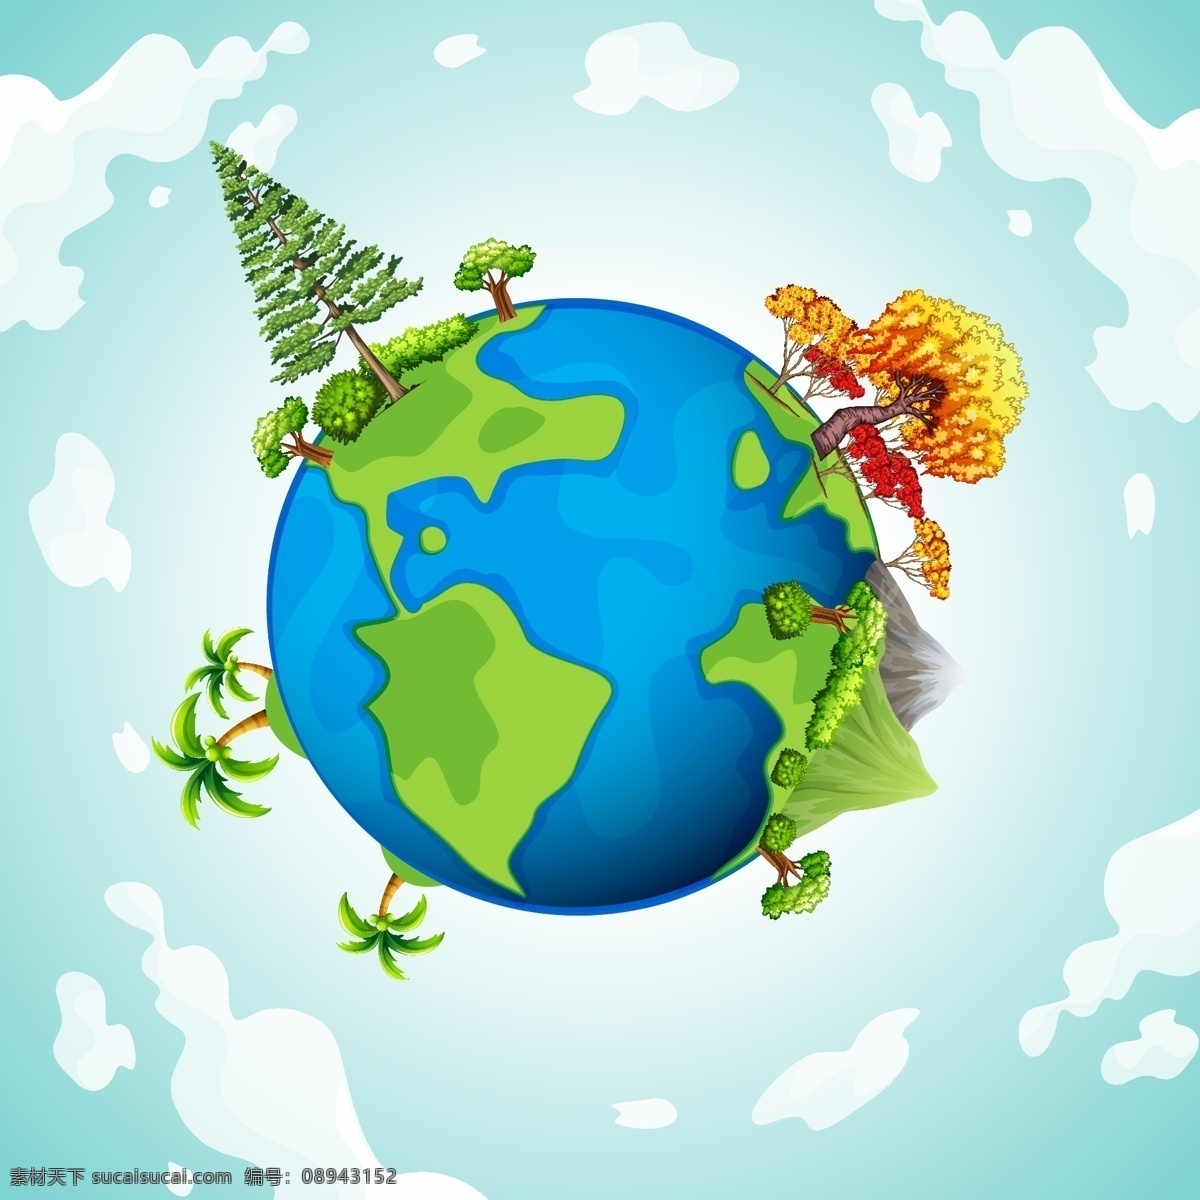 卡通地球 地球 卡通 地球日 爱护地球 环保 环境 保护大自然 生态 城市生活 节能环保 卡通设计